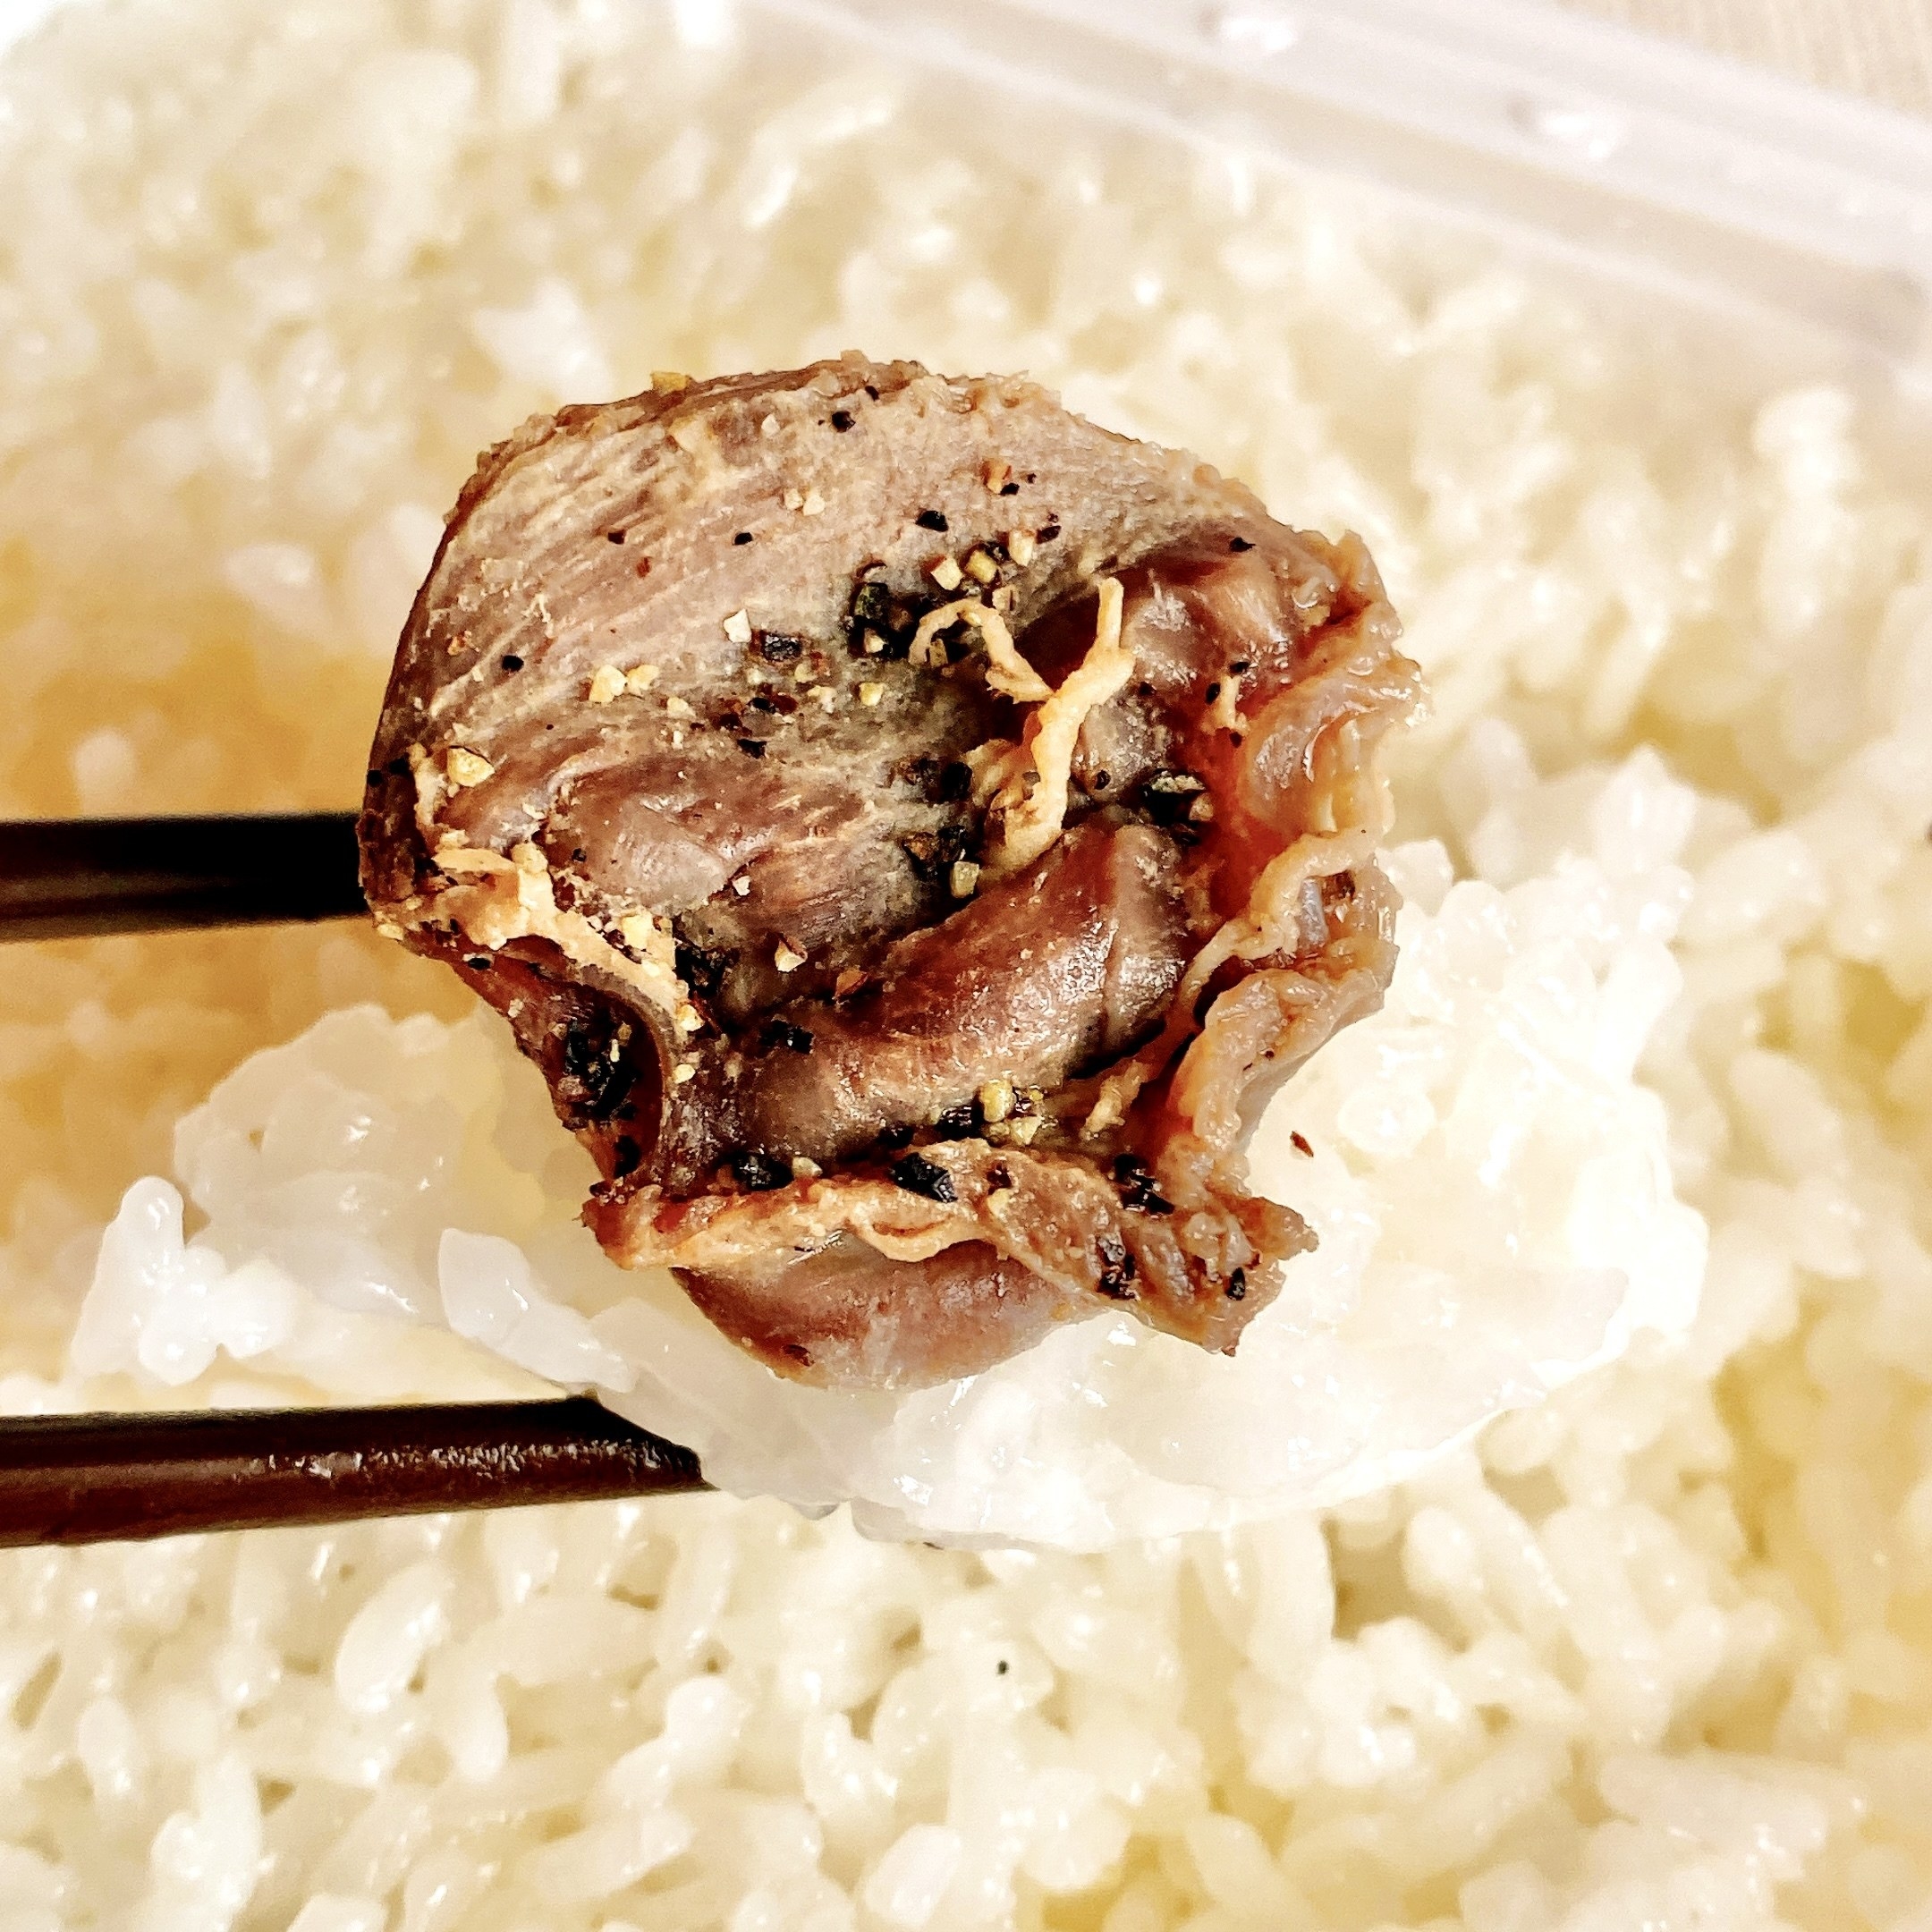 セブン‐イレブンのオススメの冷凍食品「7プレミアム 砂肝焼き」